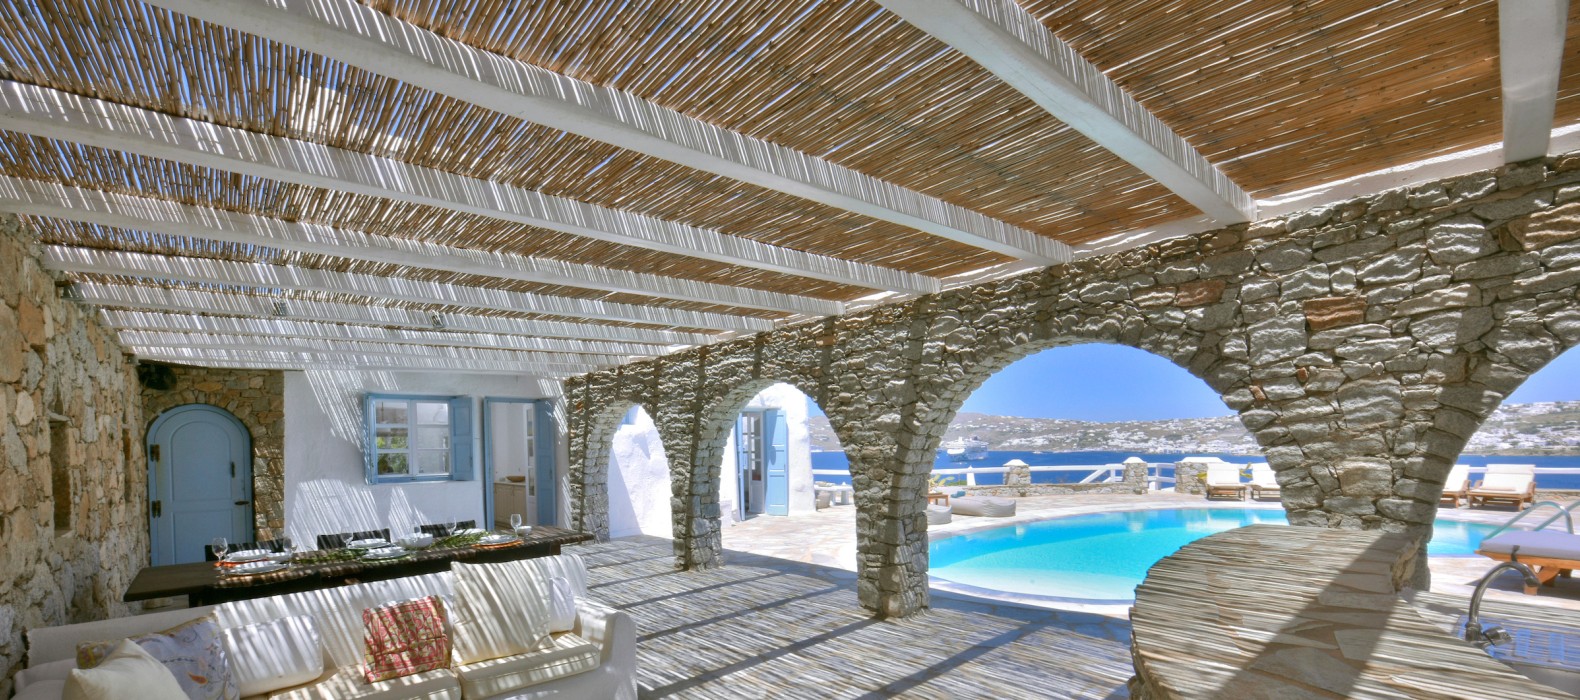 Exterior chill area of Villa Mythos in Mykonos